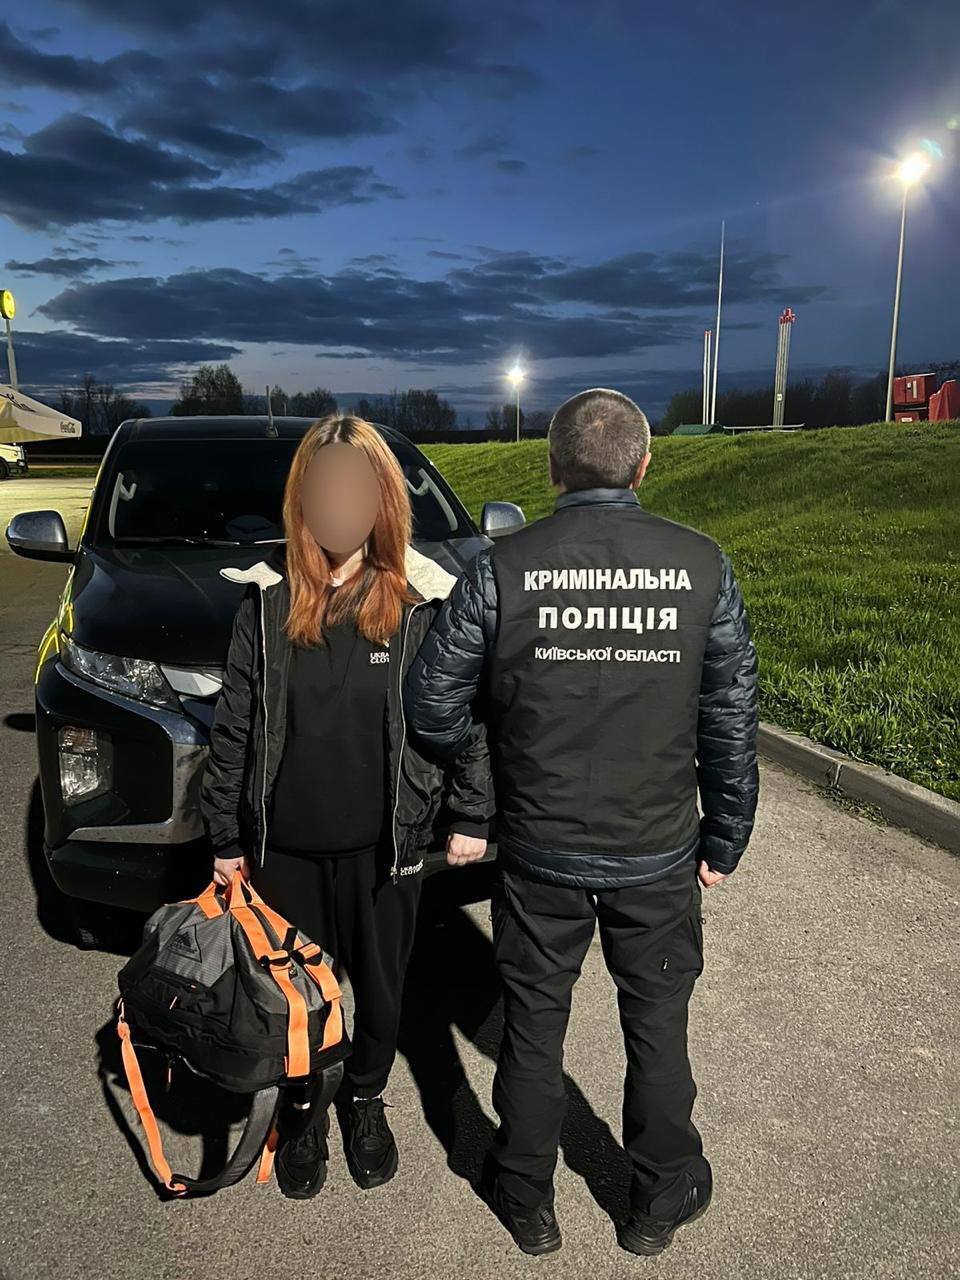 Правоохранители Киевщины разоблачили мужчину, который продавал девушек в сексуальное рабство за границу. Фото и видео